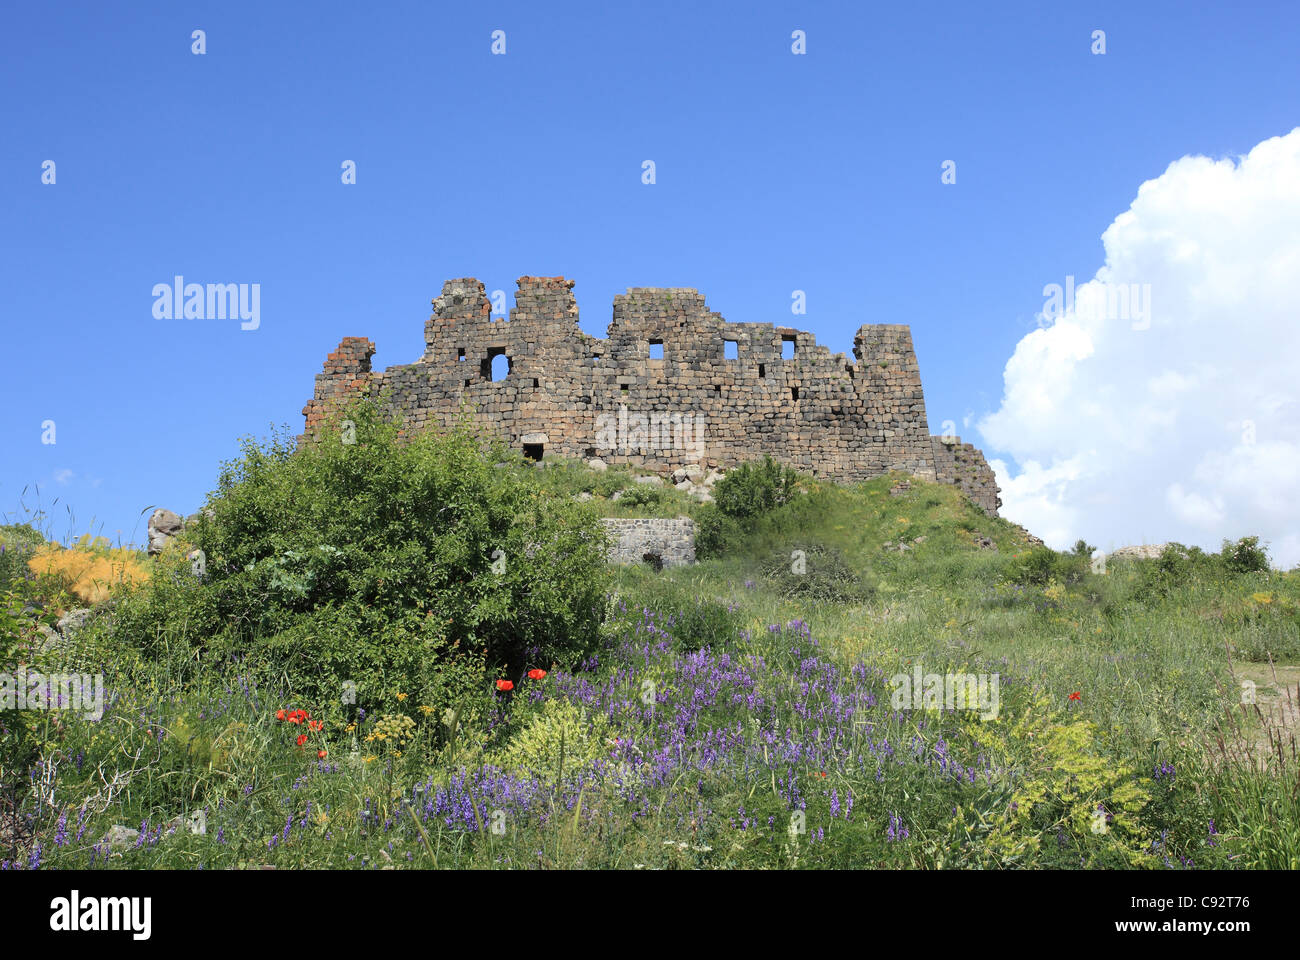 Amberd ist ein 7. Jahrhundert armenische Festung, dessen Name bedeutet "Festung in den Wolken". Stockfoto